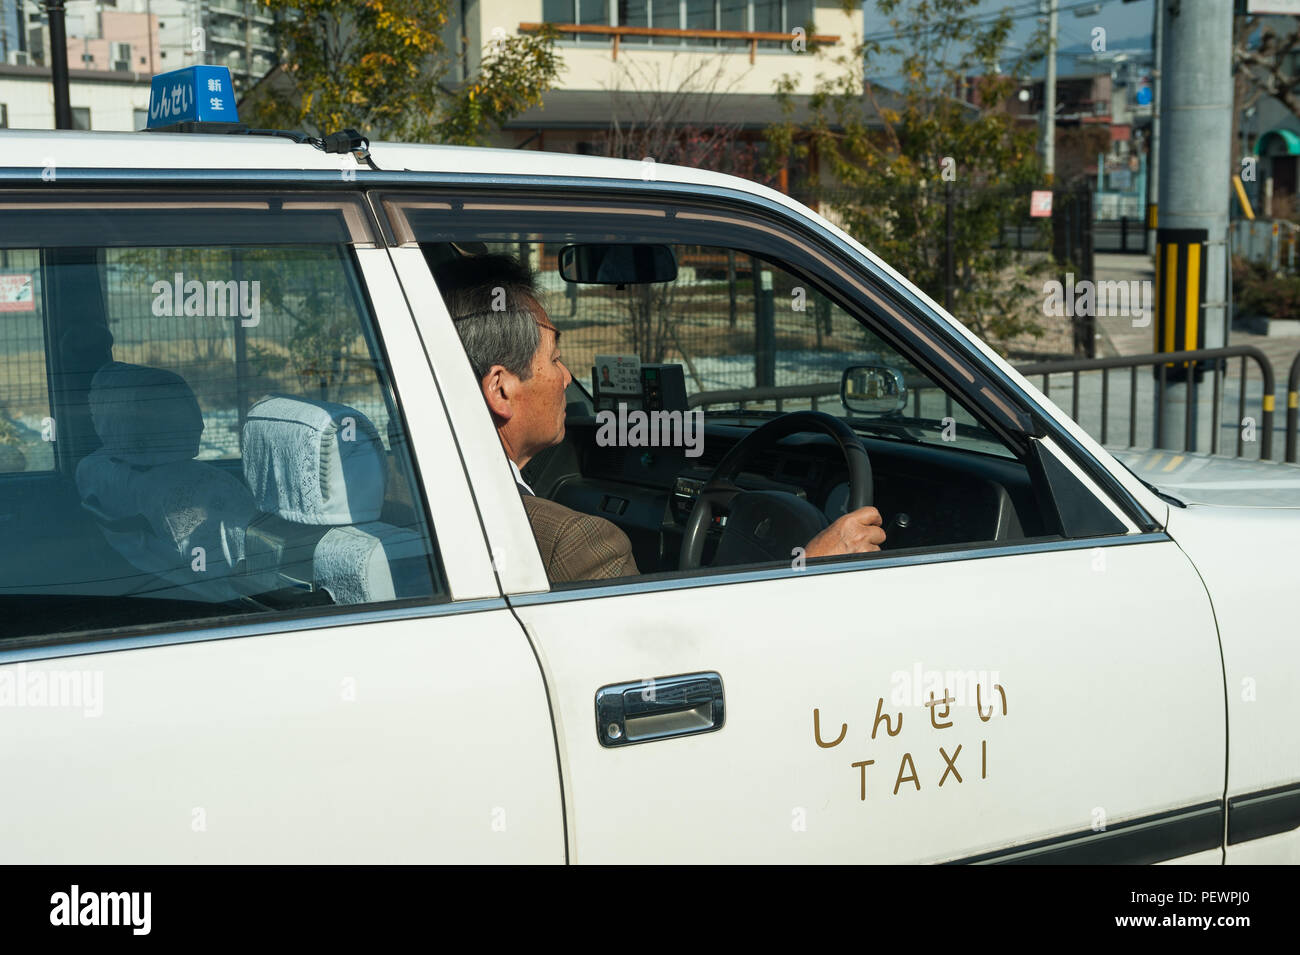 23.12.2017, Kyoto, Japon, Asie - Un chauffeur de taxi conduit son taxi vide dans les rues de Kyoto. Banque D'Images